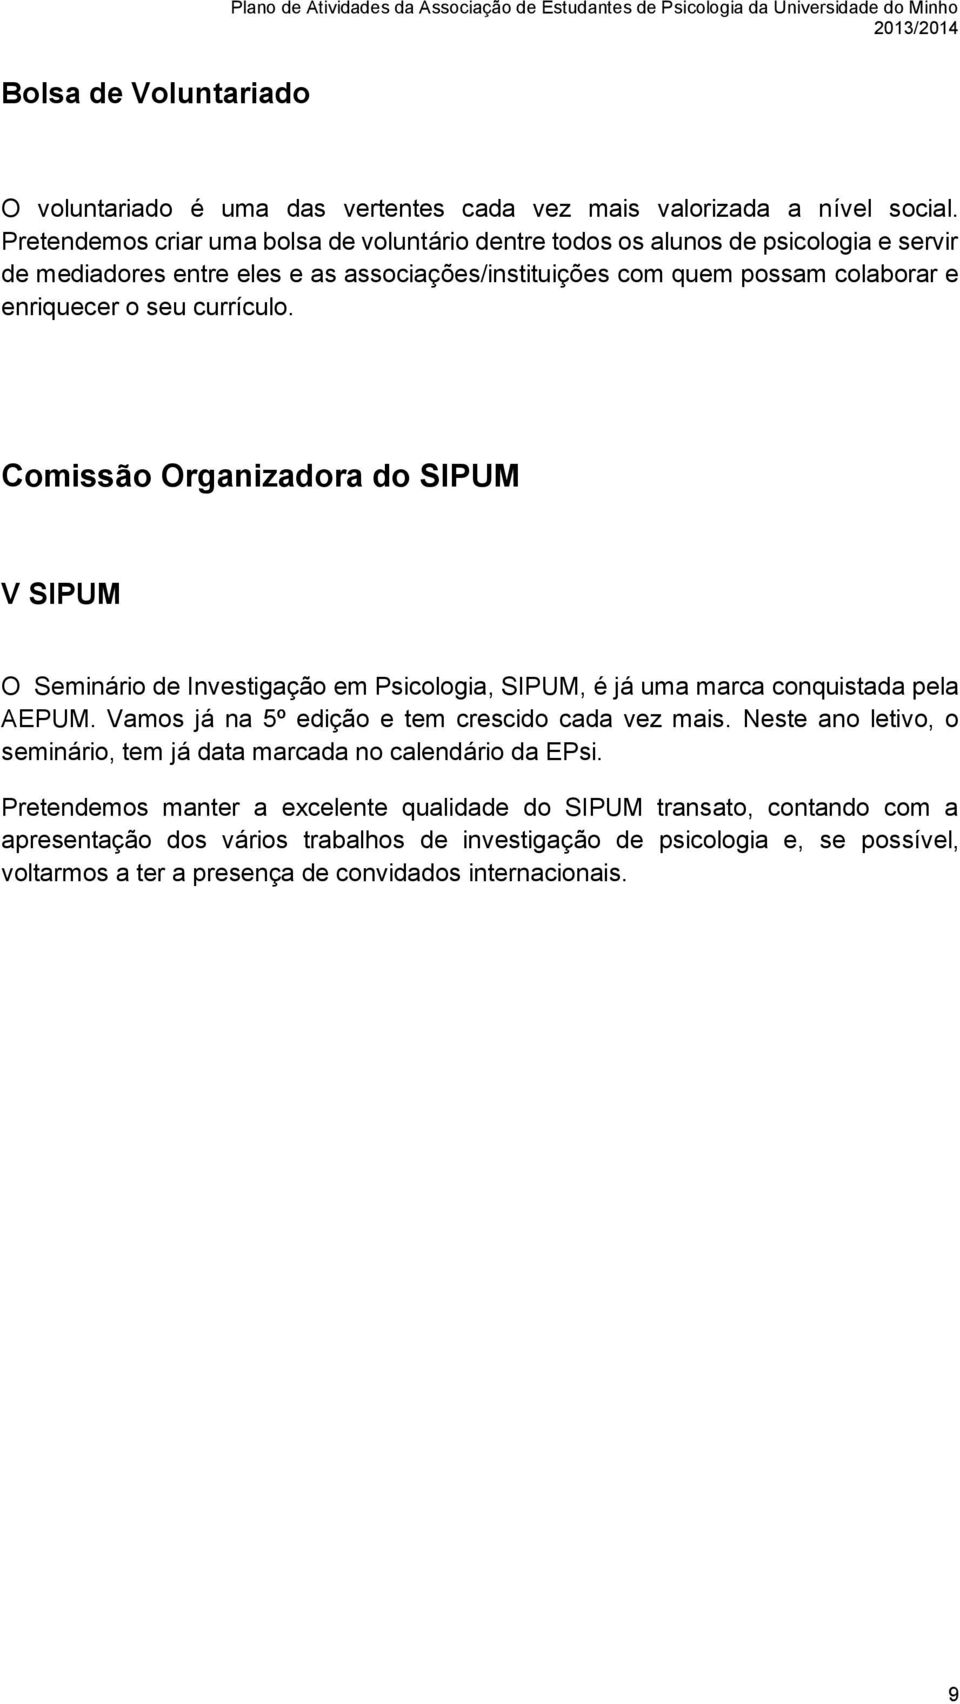 currículo. Comissão Organizadora do SIPUM V SIPUM O Seminário de Investigação em Psicologia, SIPUM, é já uma marca conquistada pela AEPUM. Vamos já na 5º edição e tem crescido cada vez mais.